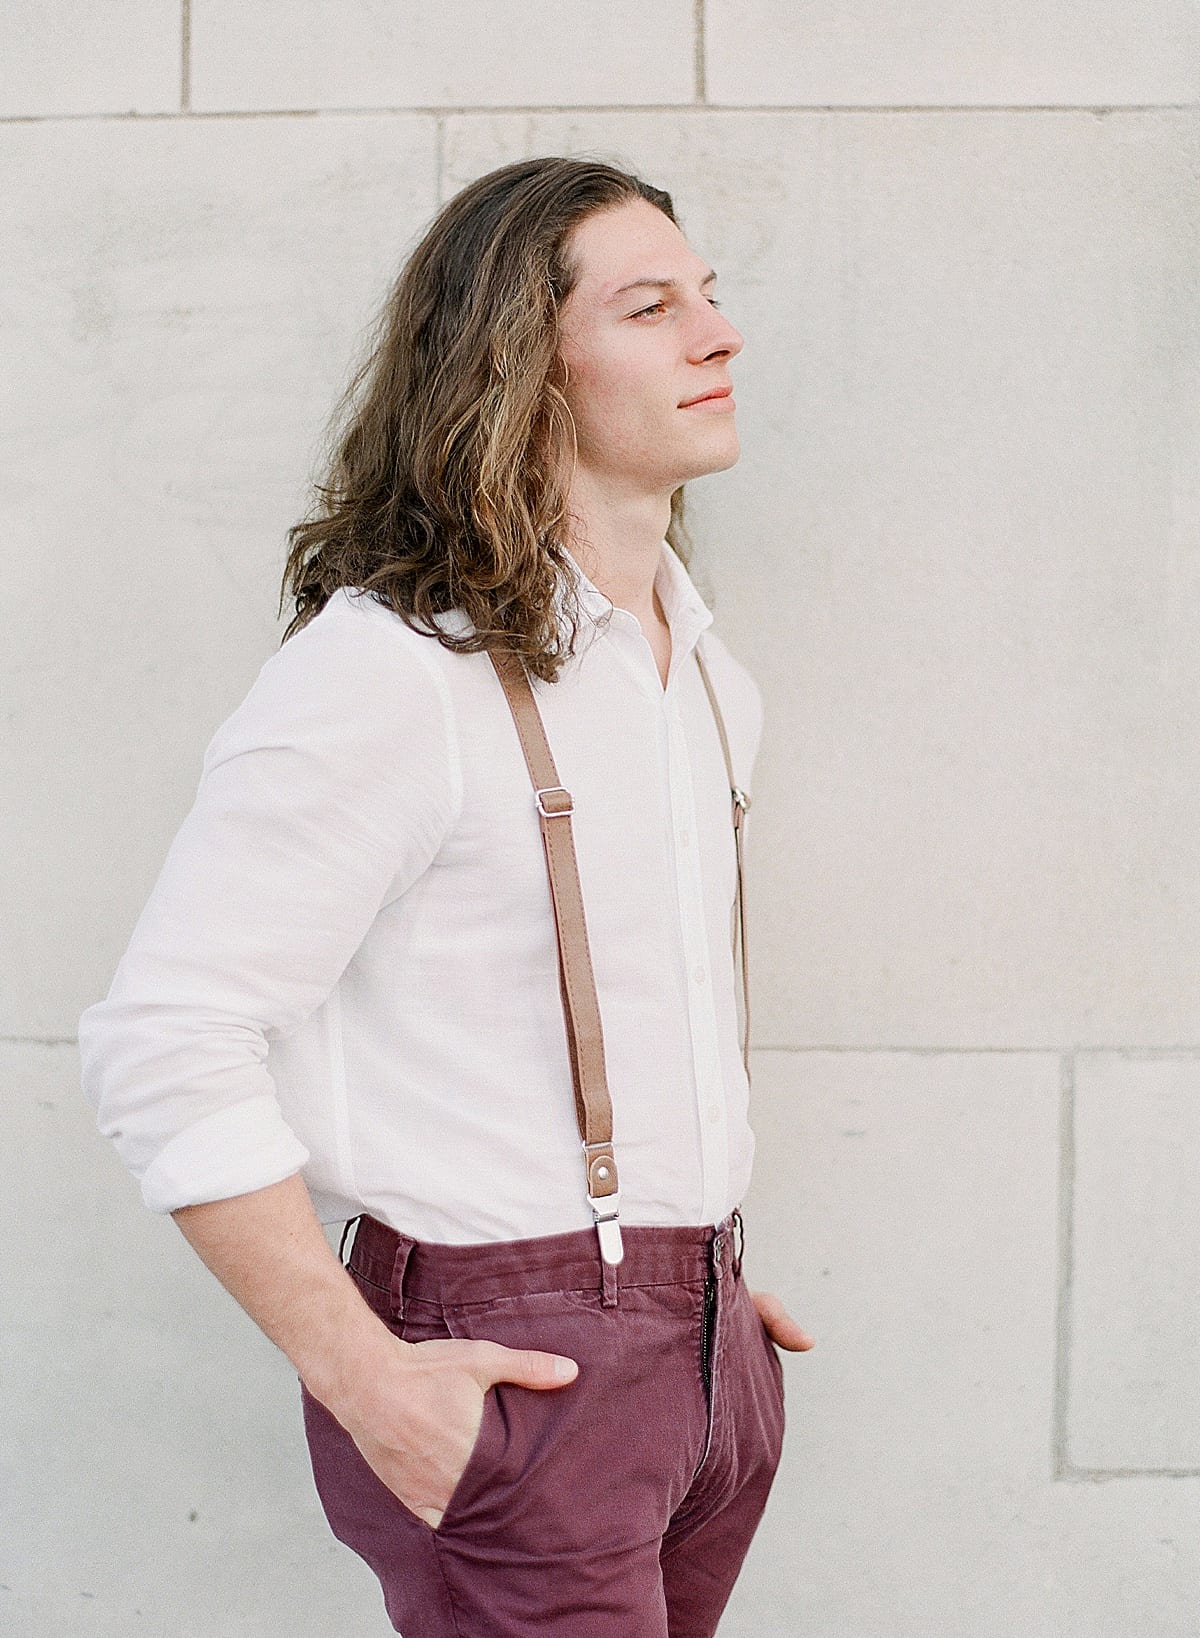 Asheville Elopement Groom in Suspenders Looking Off Photo